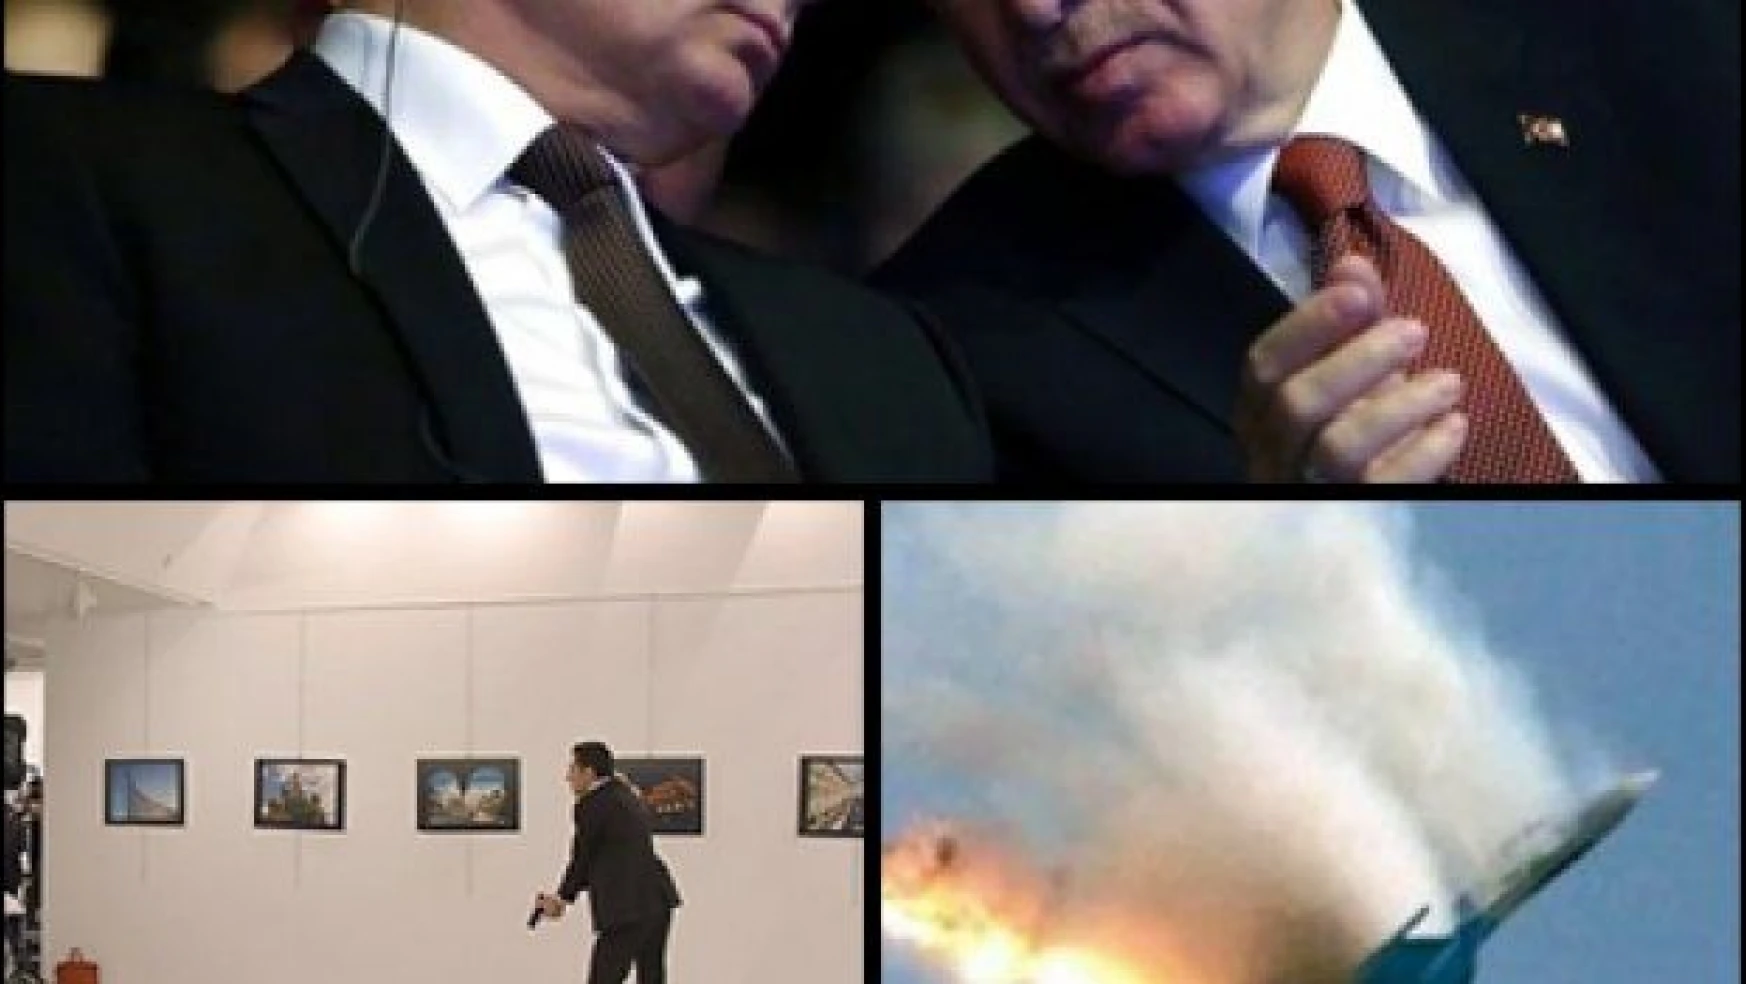 Rus Uçağının düşürülmesi ve Elçilik suikastı aynı oyunun parçası mı?